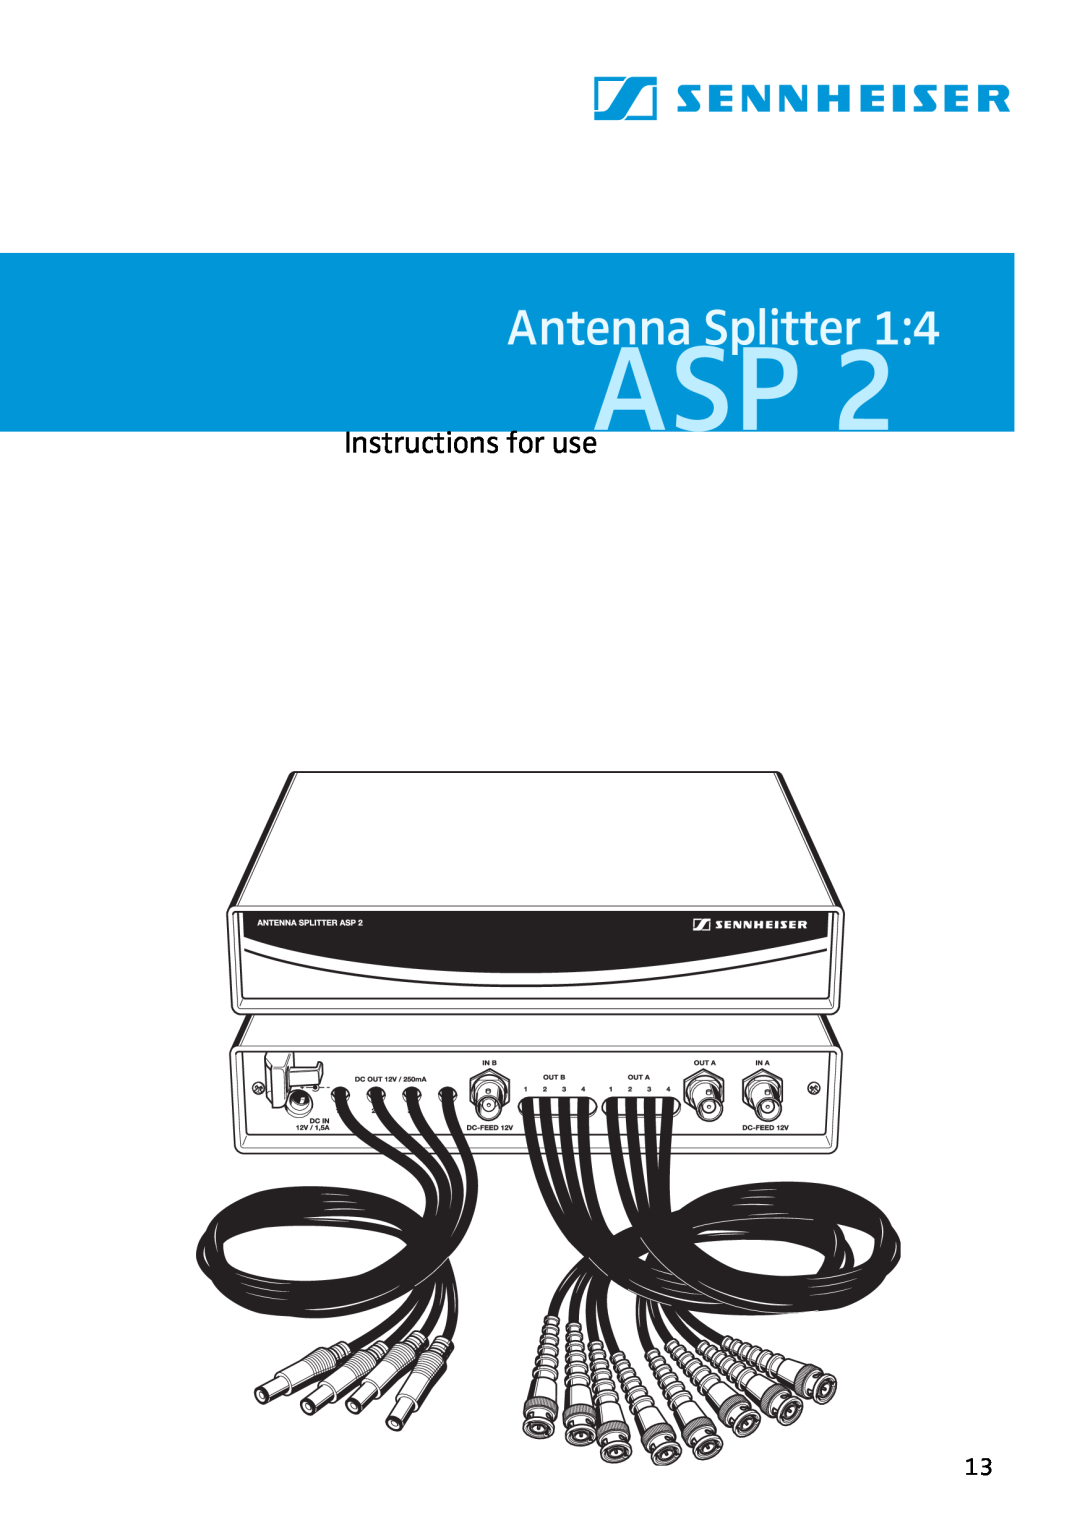 Sennheiser ASP 2 manual Instructions for use, Antenna Splitter 